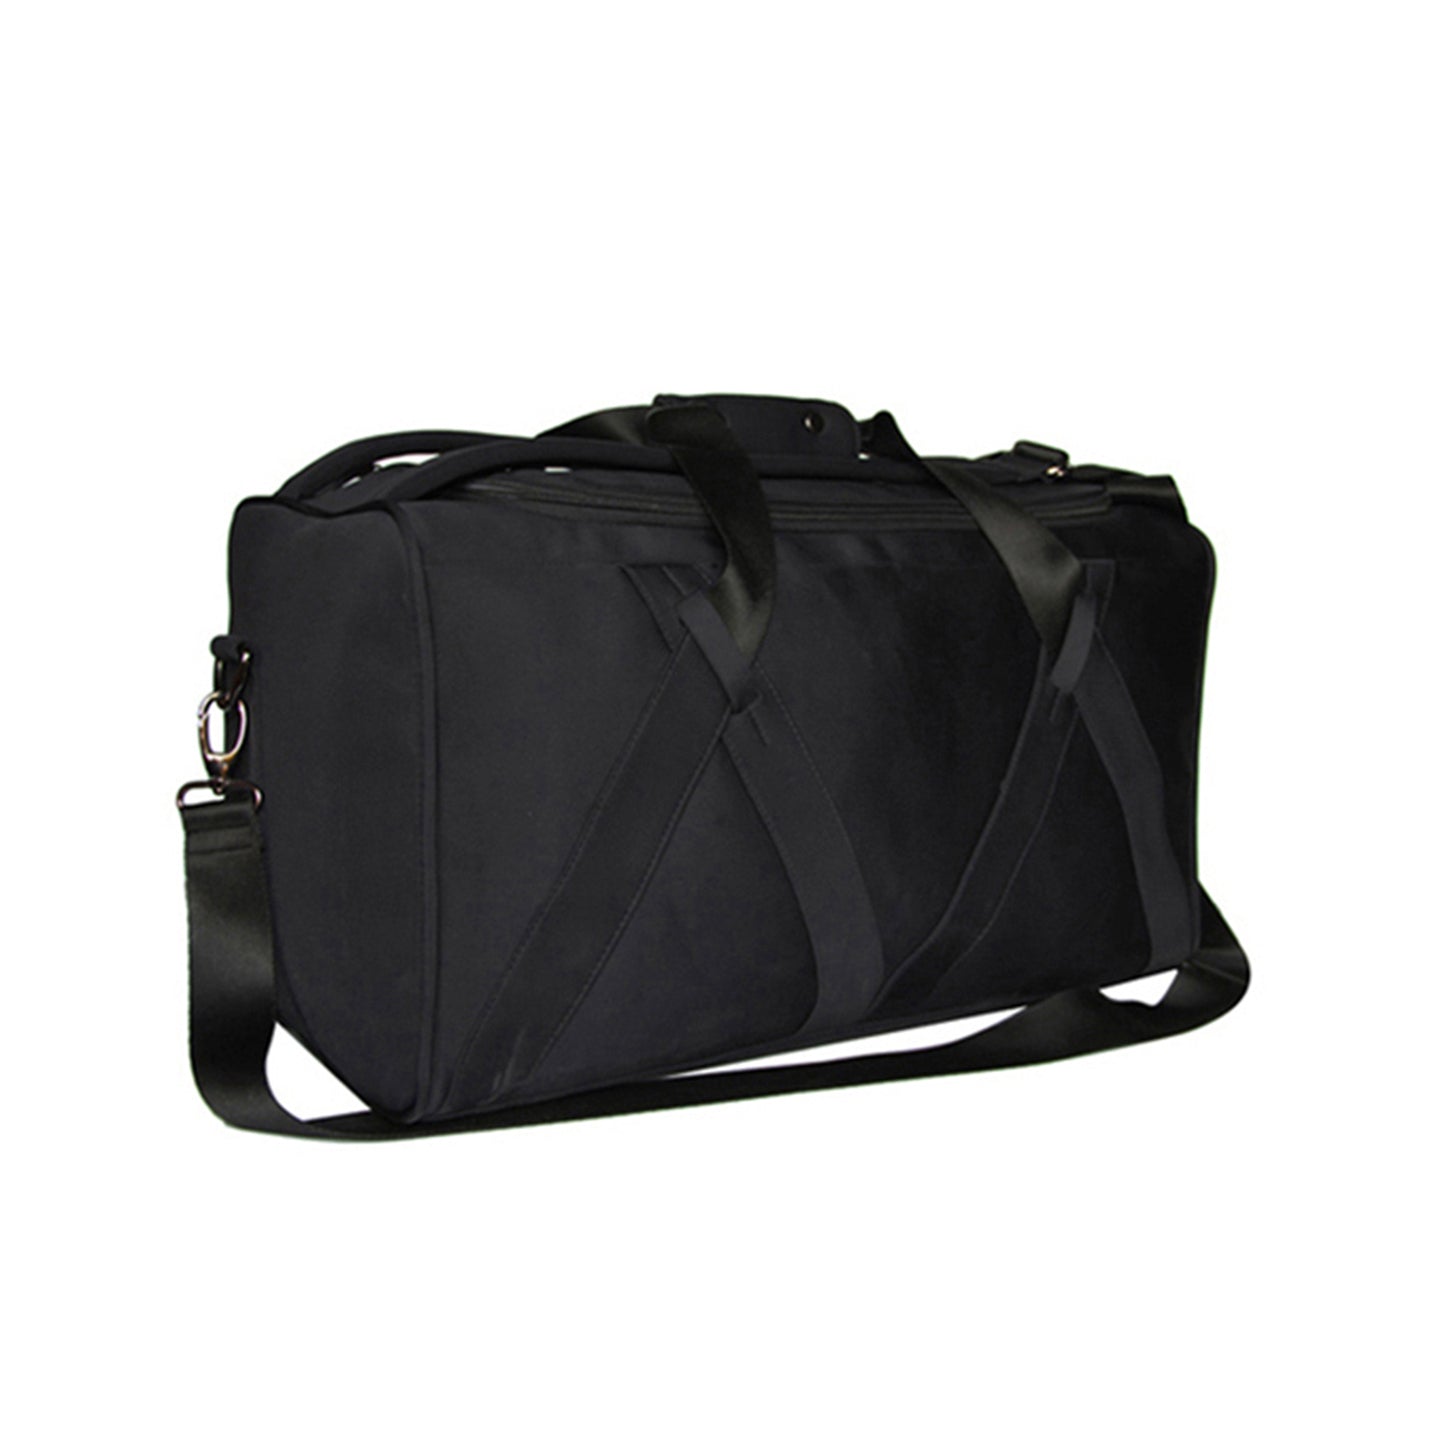 Black Nylon Duffle Bag